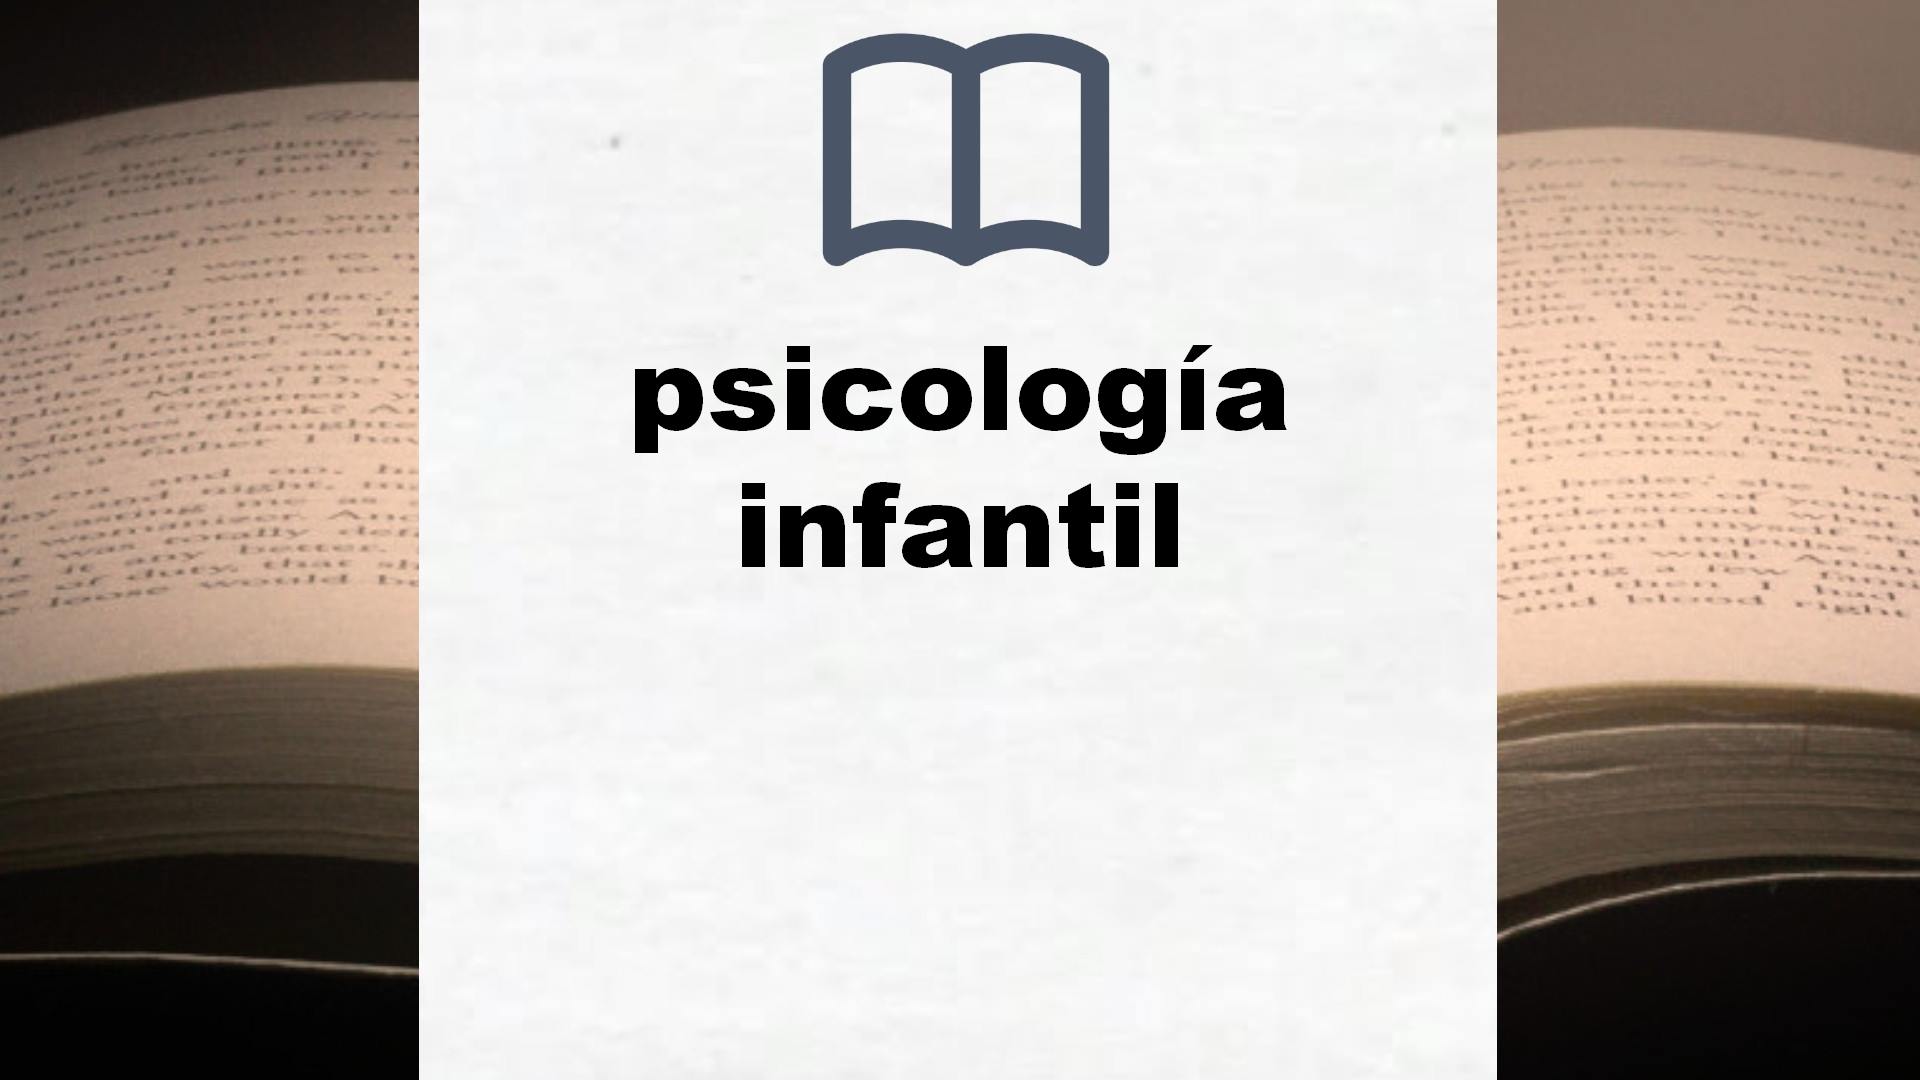 Libros sobre psicología infantil